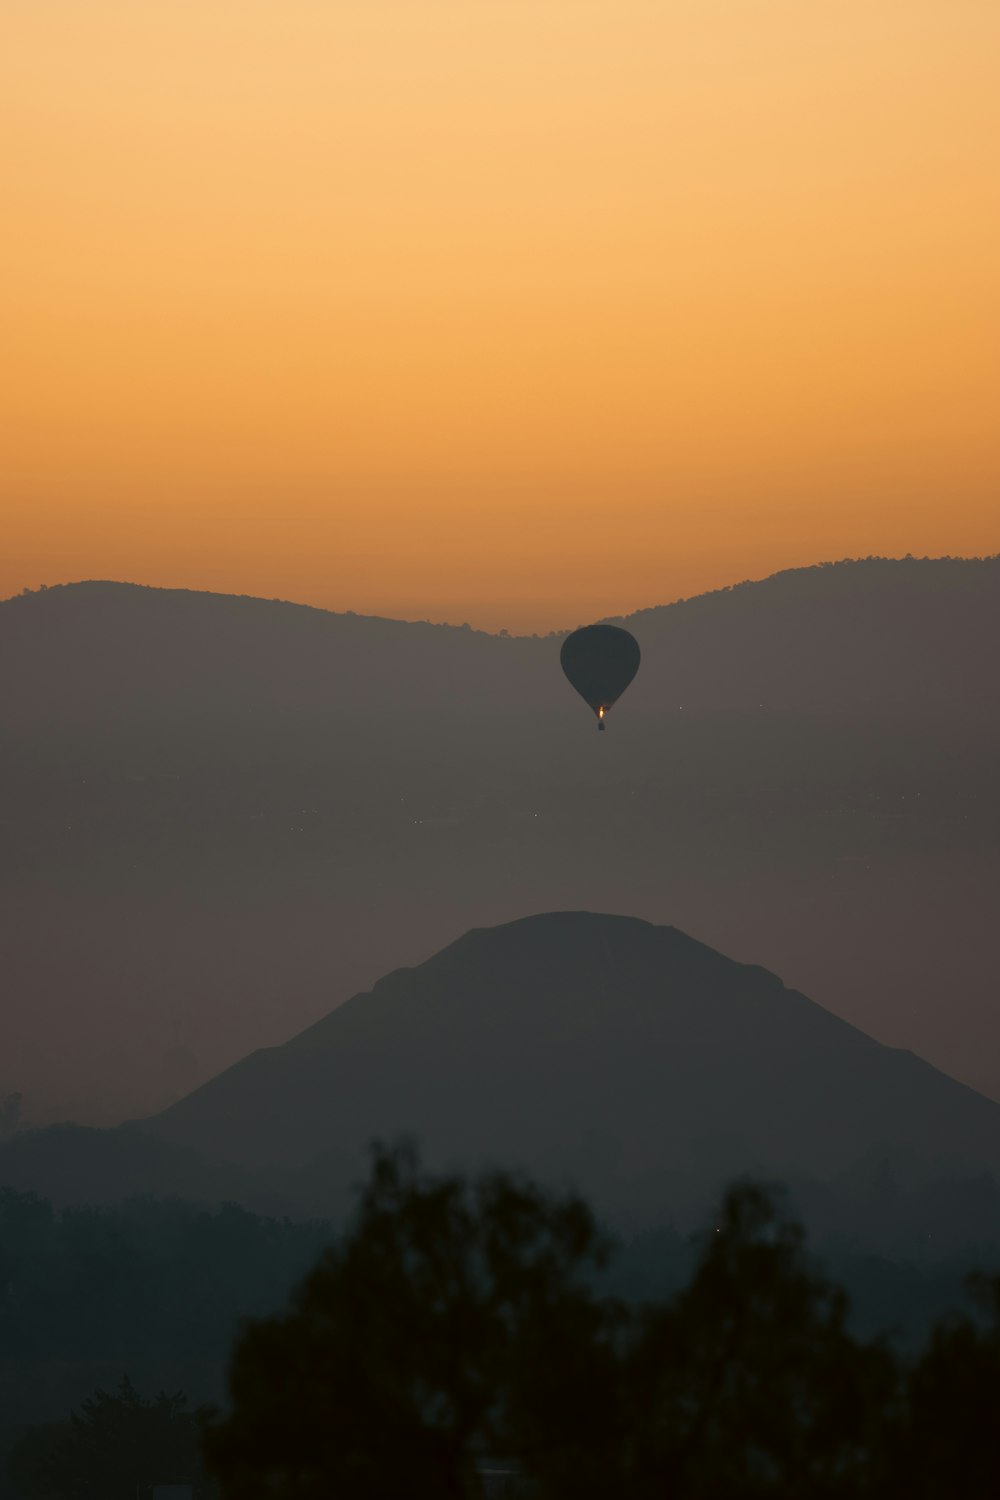 un globo aerostático volando sobre una cadena montañosa